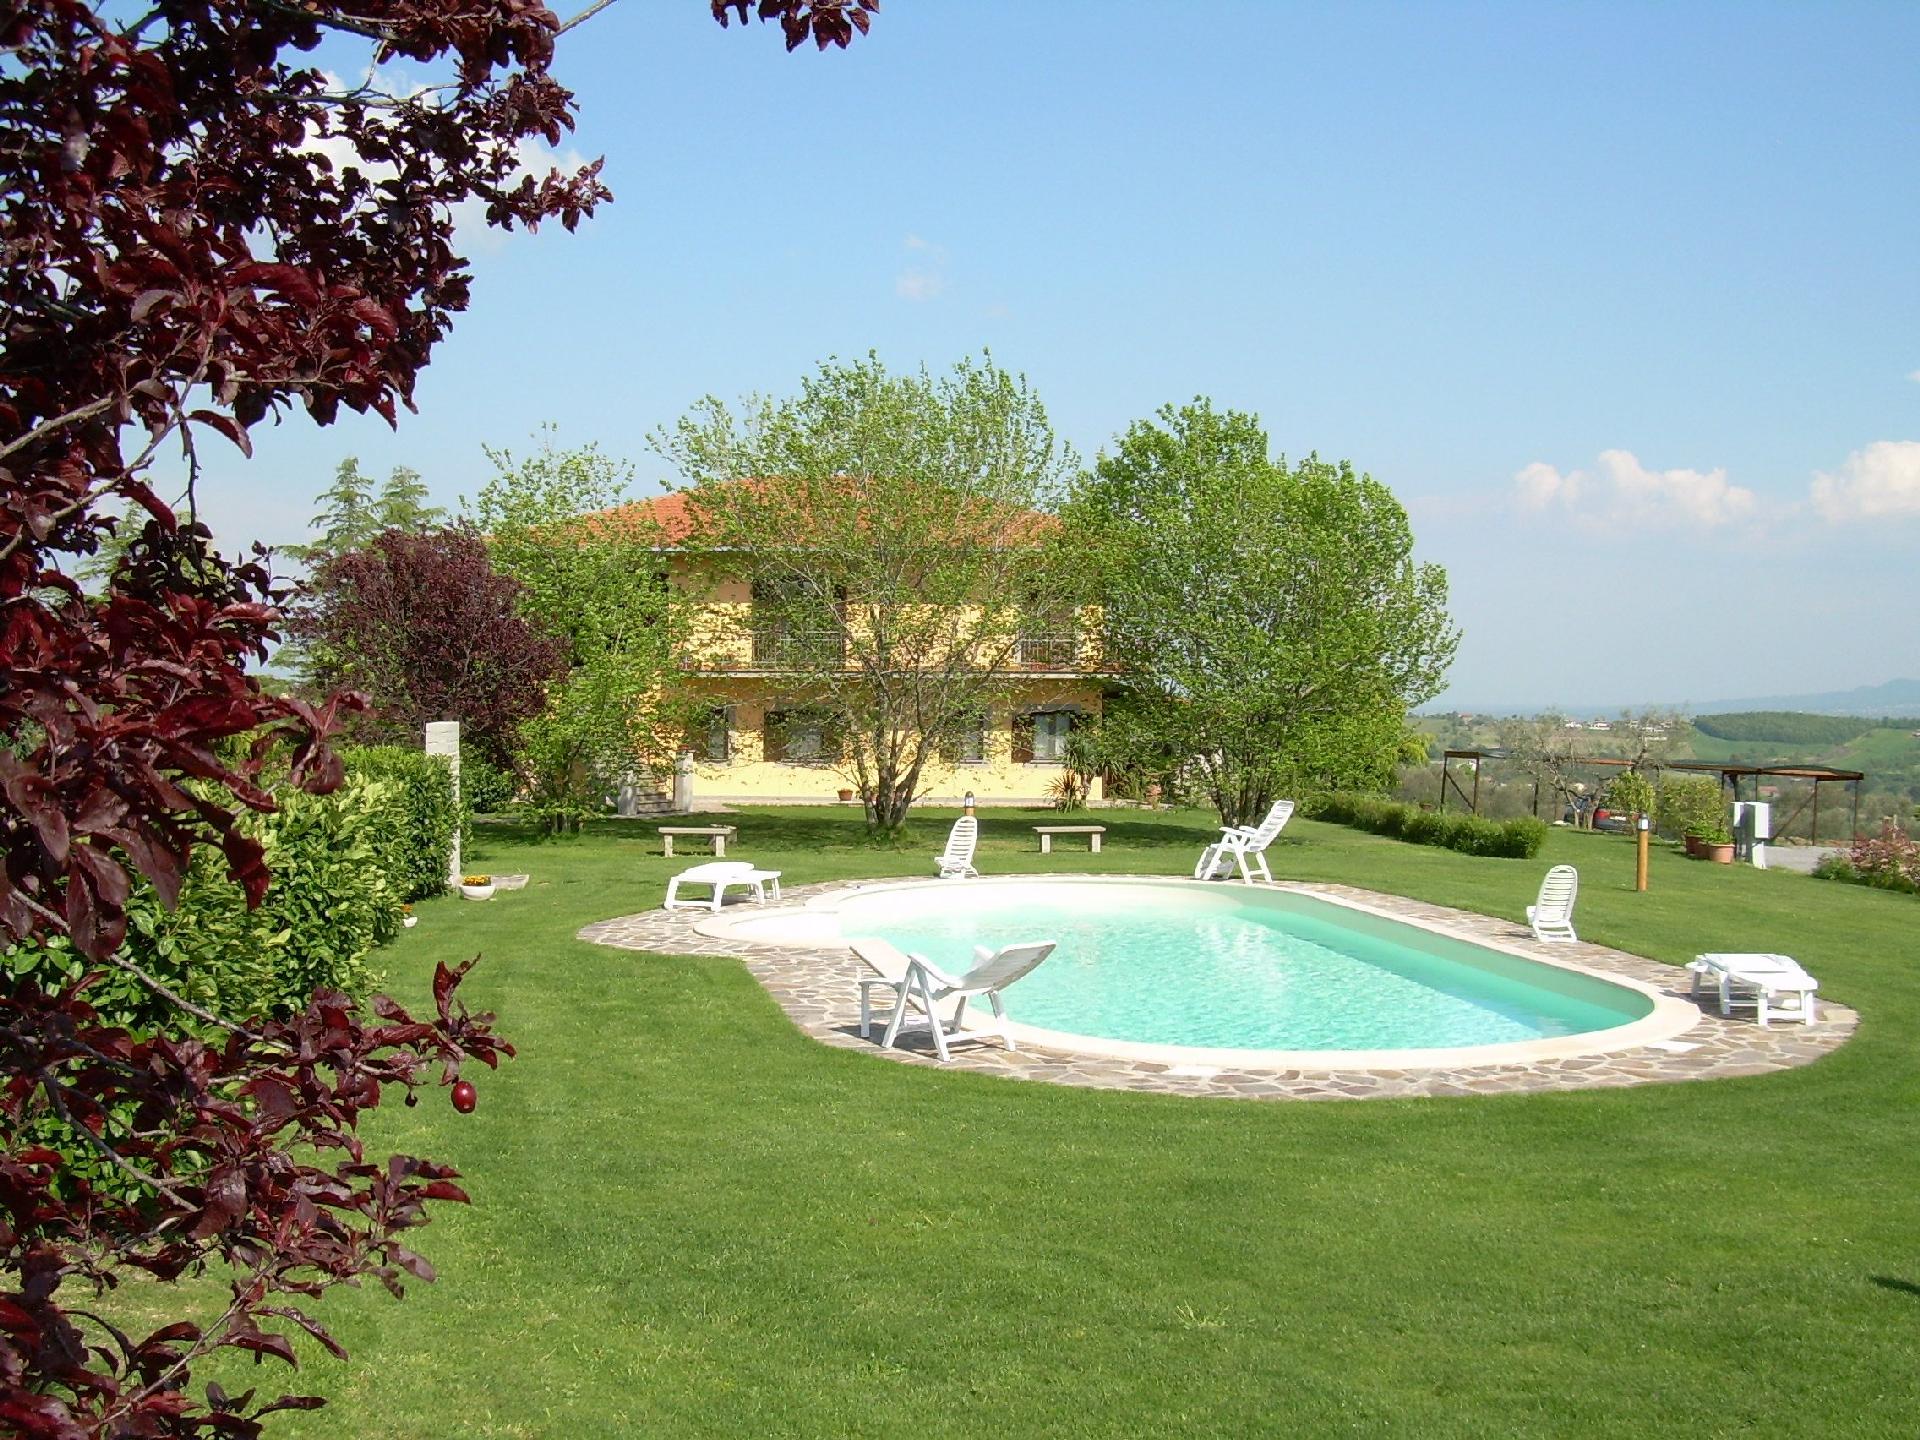 Ferienwohnung für 4 Personen ca. 40 m² i Ferienhaus in Italien